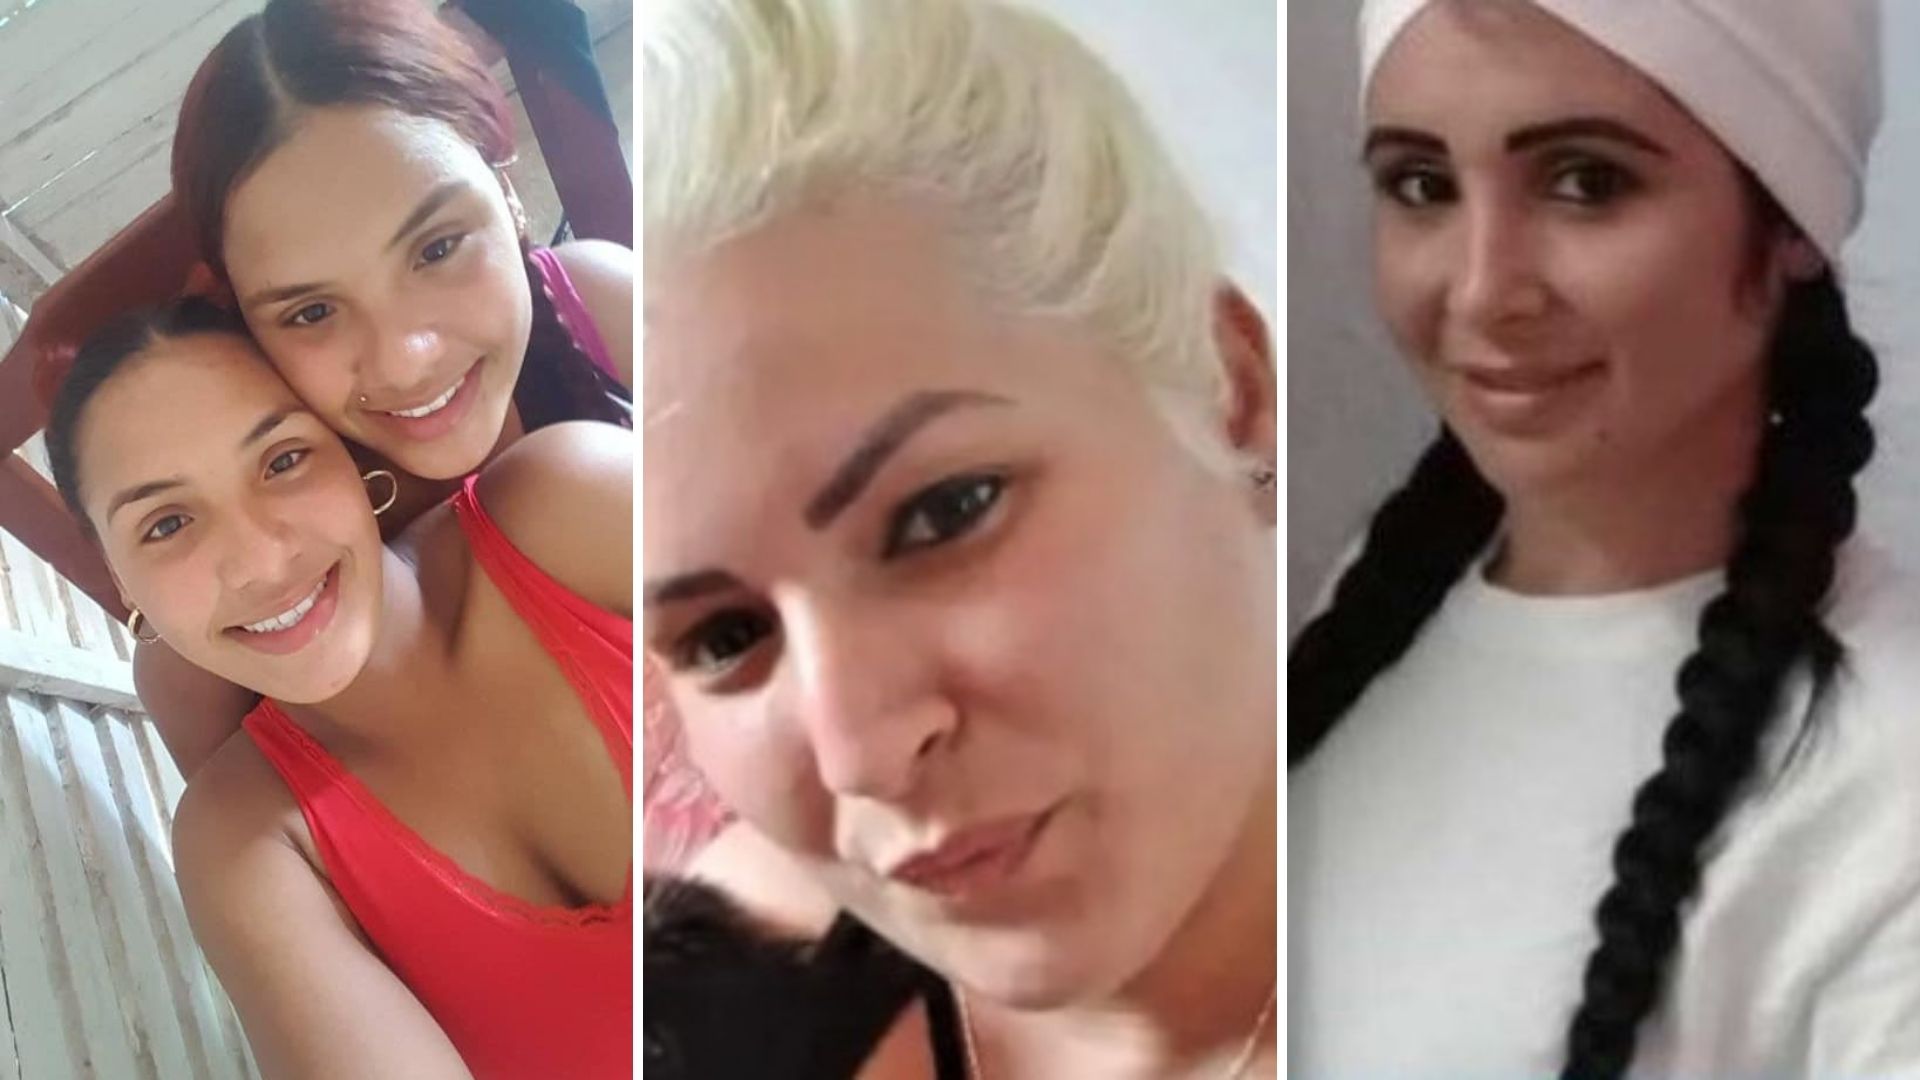 Mencionaron los casos de Jany Milo, Lázara González, las hermanas Lisdany y Lidianis Rodríguez, actualmente en prisión por salir a manifestarse pacíficamente en julio pasado